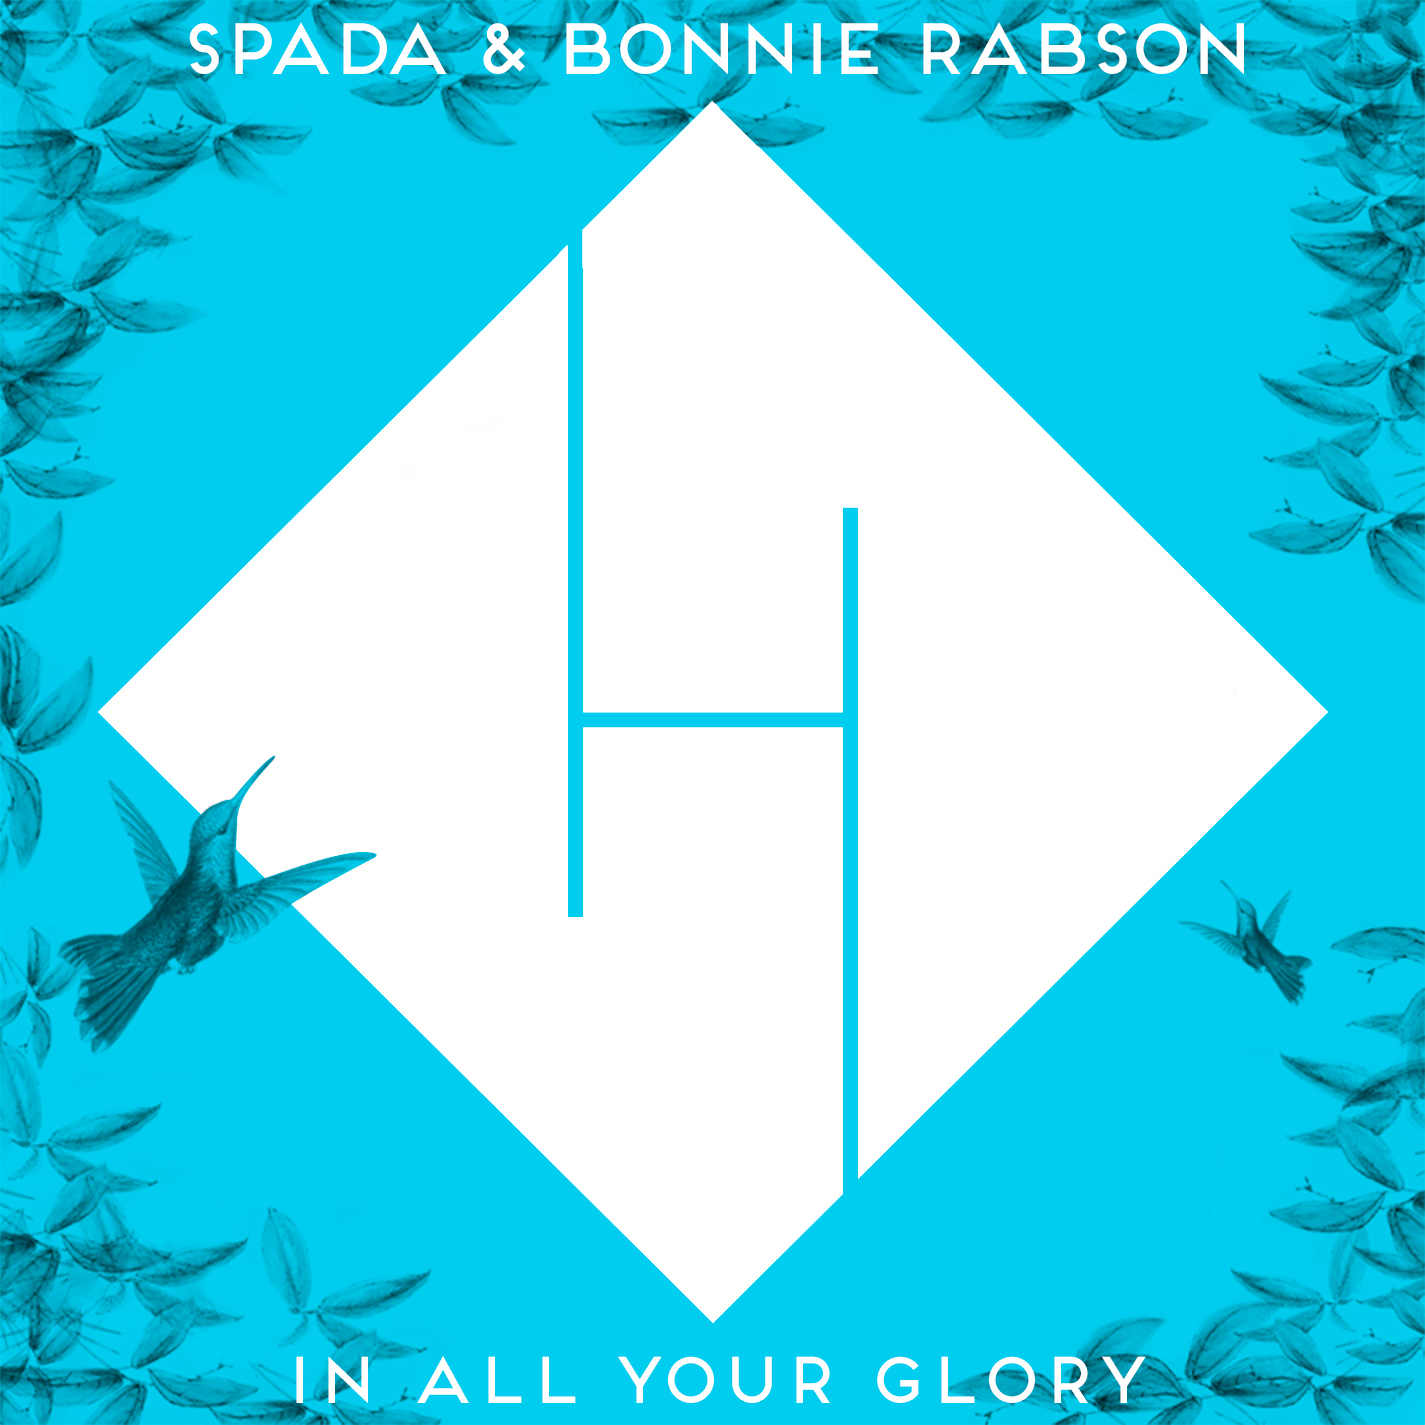 ಡೌನ್ಲೋಡ್ ಮಾಡಿ In All Your Glory - Spada & Bonnie Rabson (Remix Boris Brejcha) PREVIEW